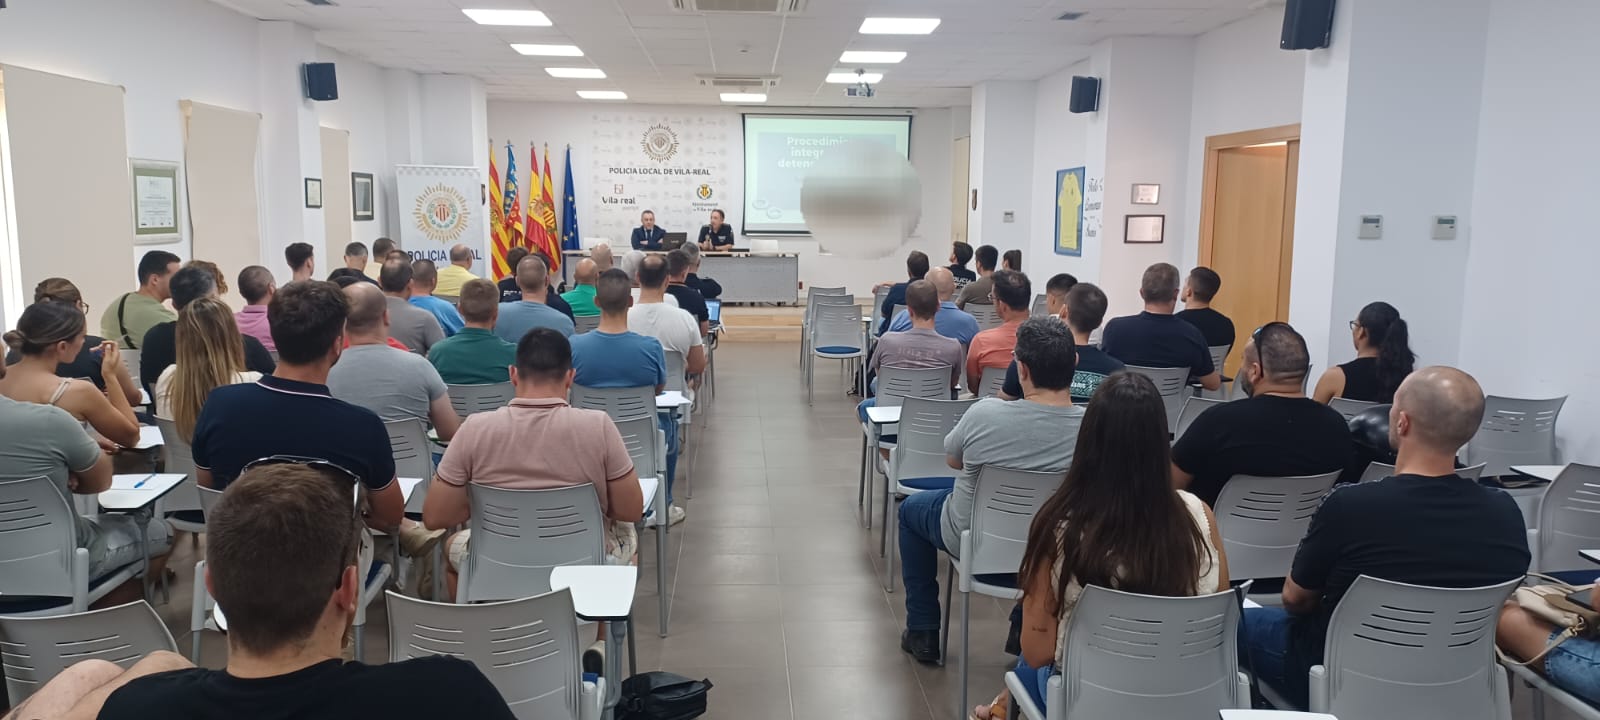 La Policia Local de Vila-real imparteix un curs sobre el procediment integral de la detenció policial